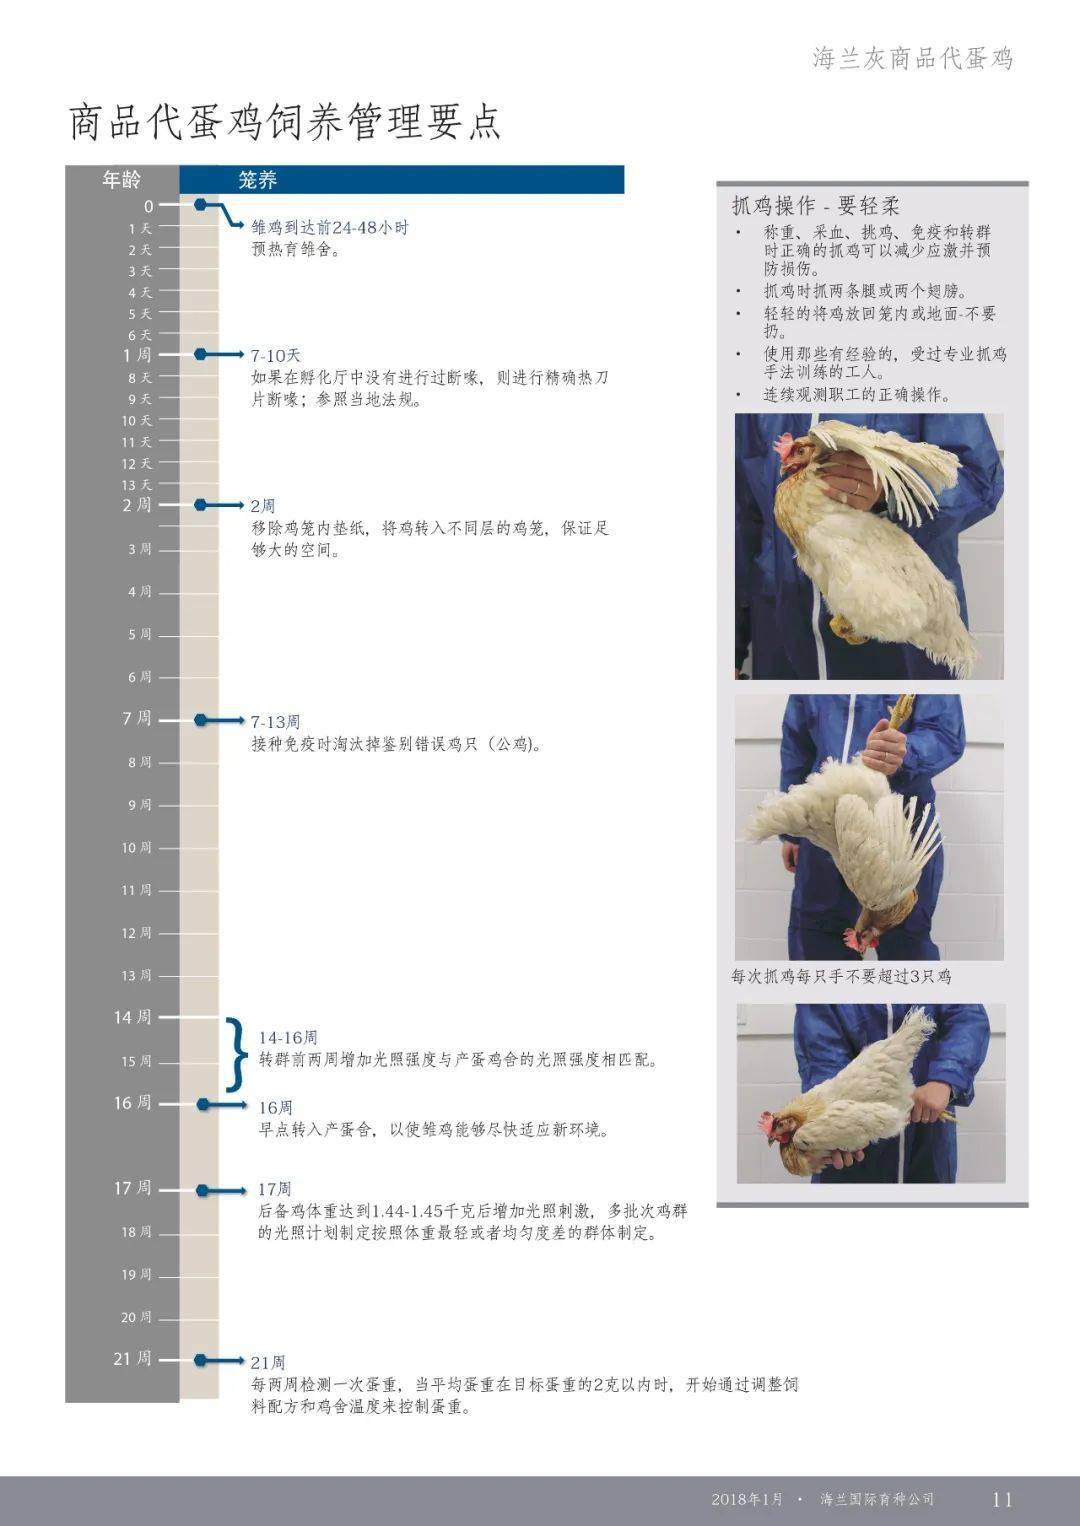 伊莎褐蛋鸡的管理手册图片